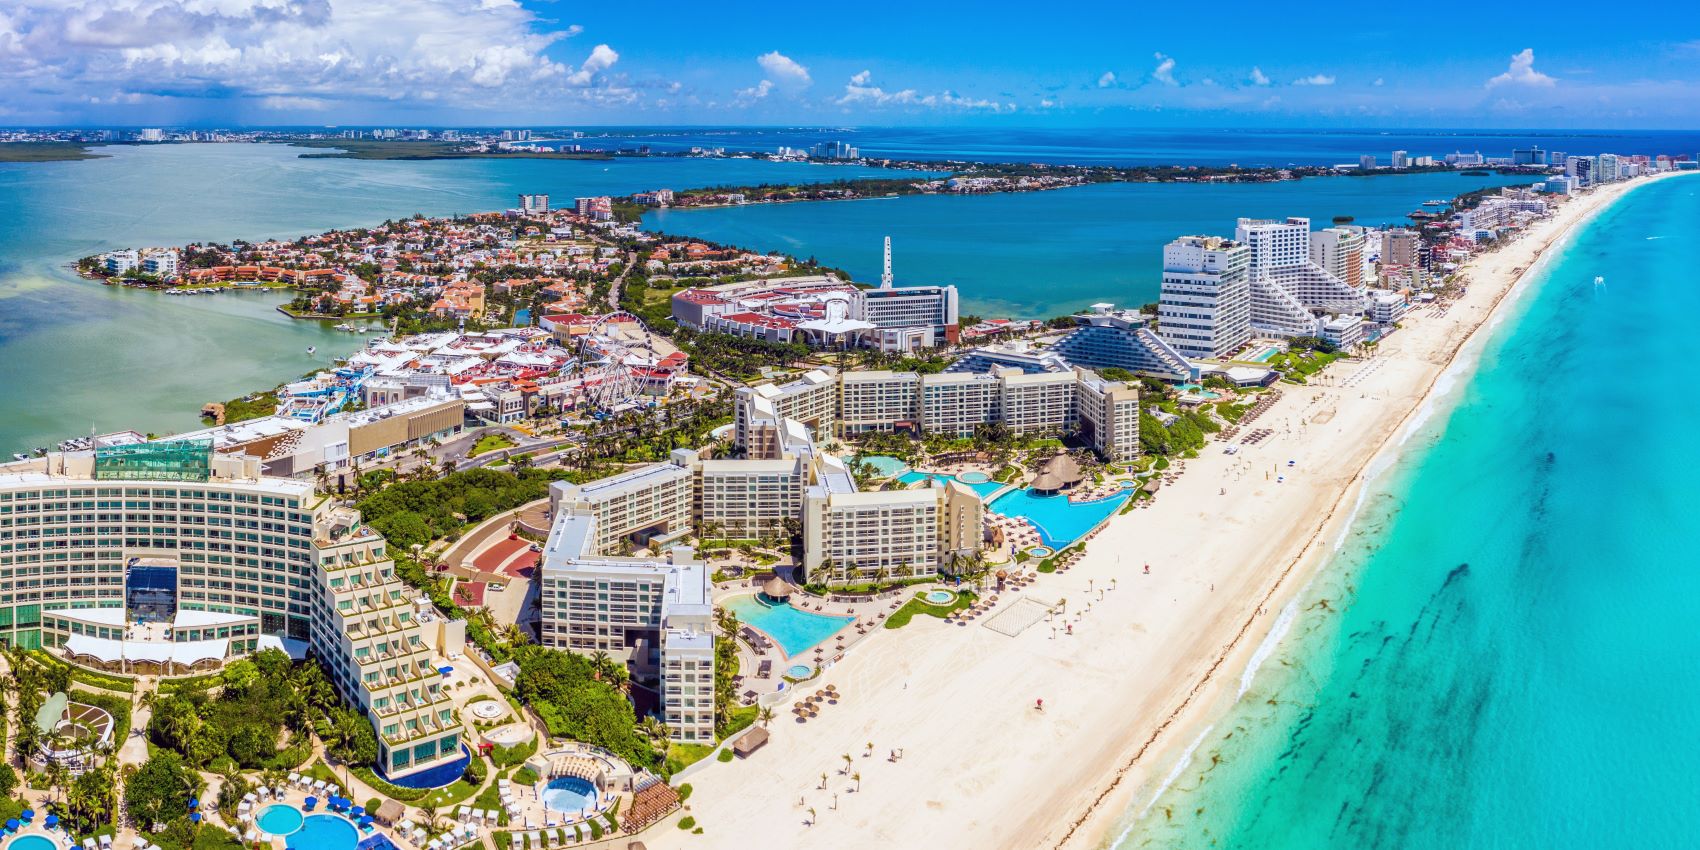 Zona hotelera de Cancún. Vista panorámica que muestra todos los hoteles de Cancún, en la forma de siete donde están construidos. 